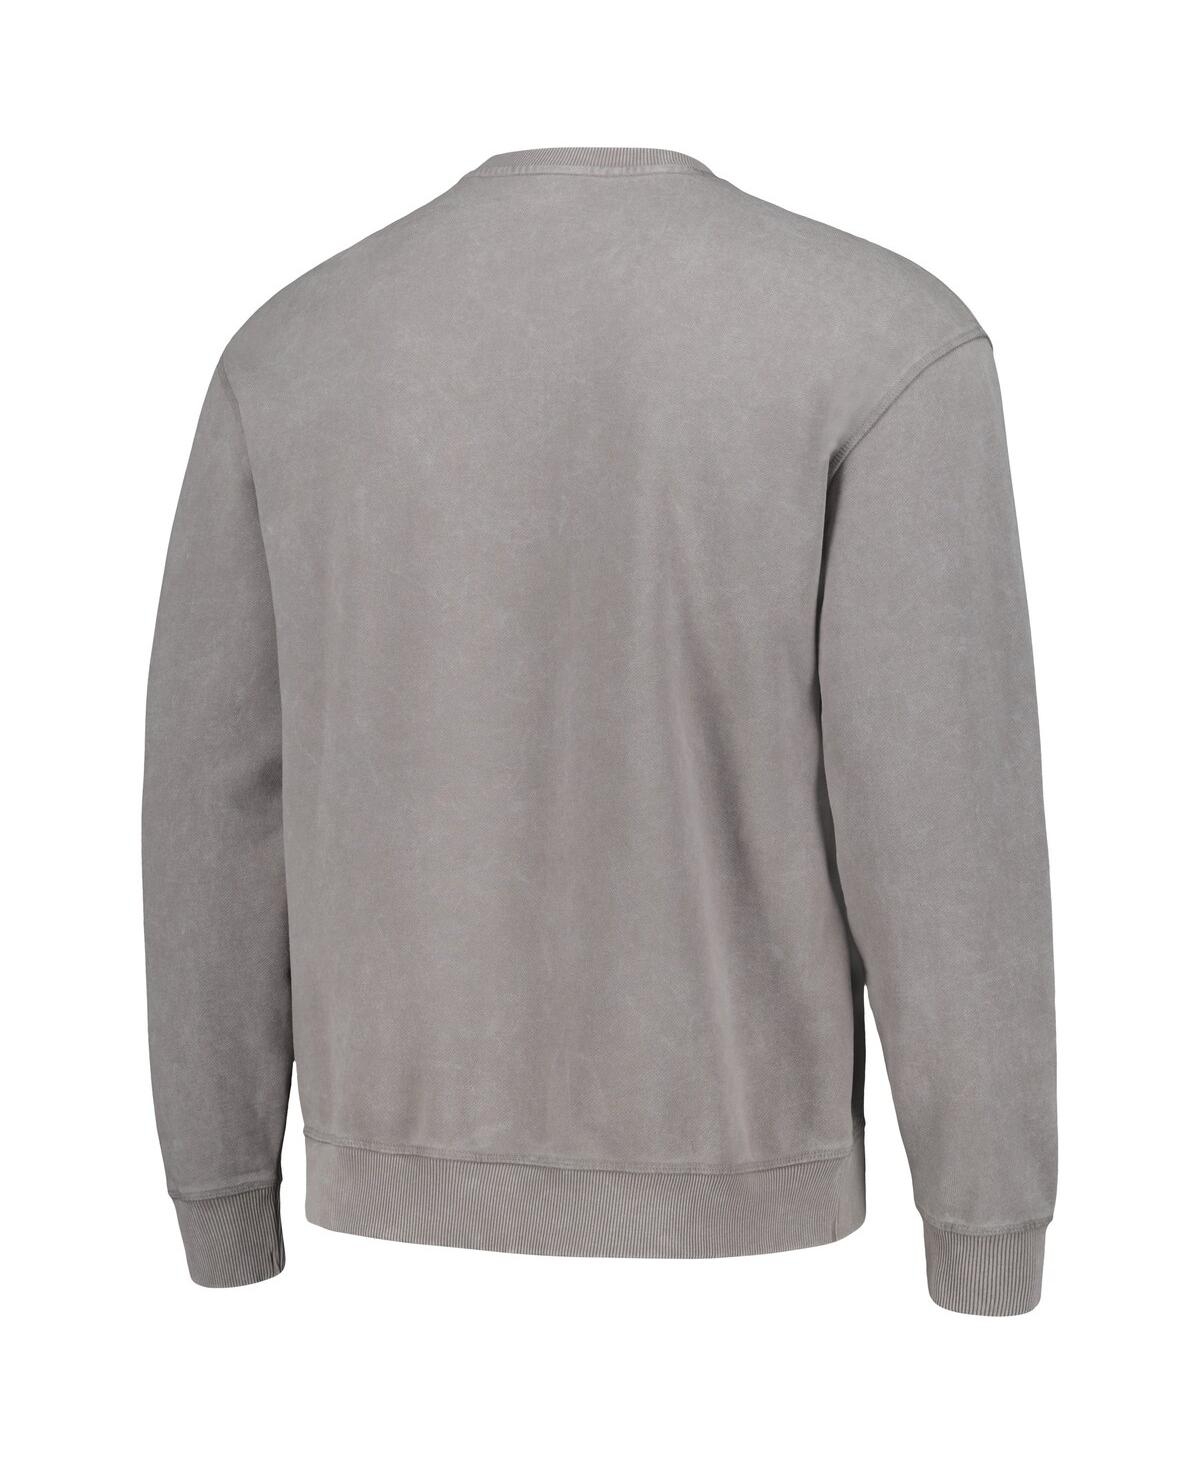 Shop The Wild Collective Men's And Women's  Gray Cincinnati Bengals Distressed Pullover Sweatshirt